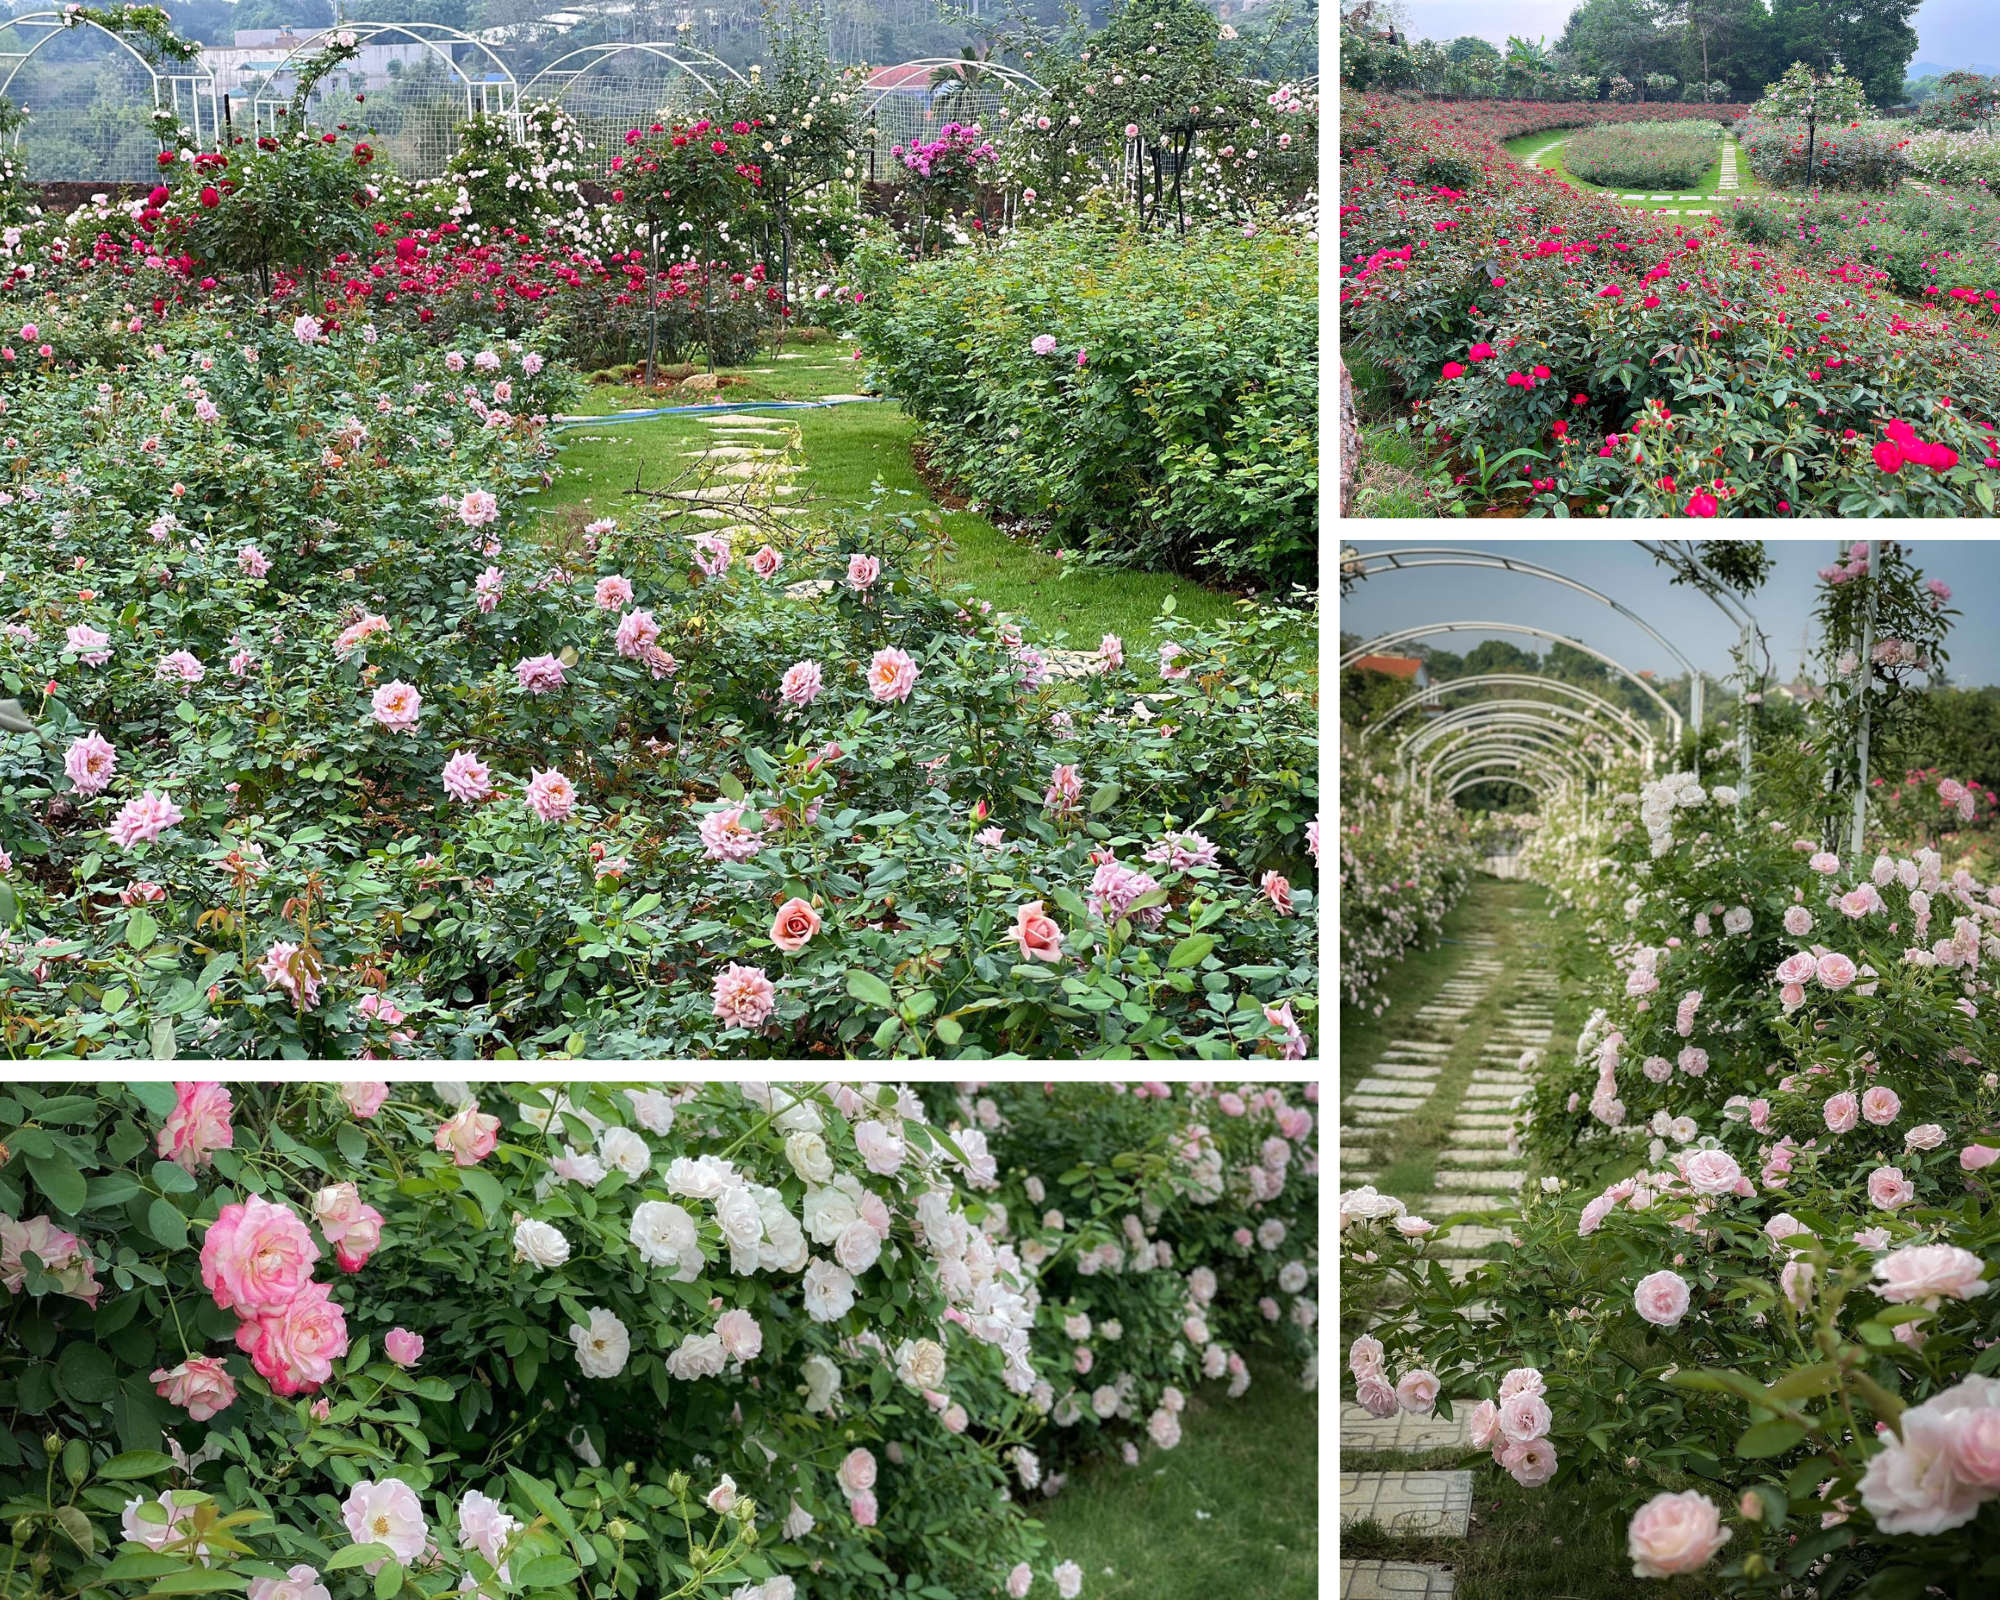 Mùng 3 Tết đến thăm vườn hồng rộng 6.000m² của người phụ nữ Hà Nội - Ảnh 4.